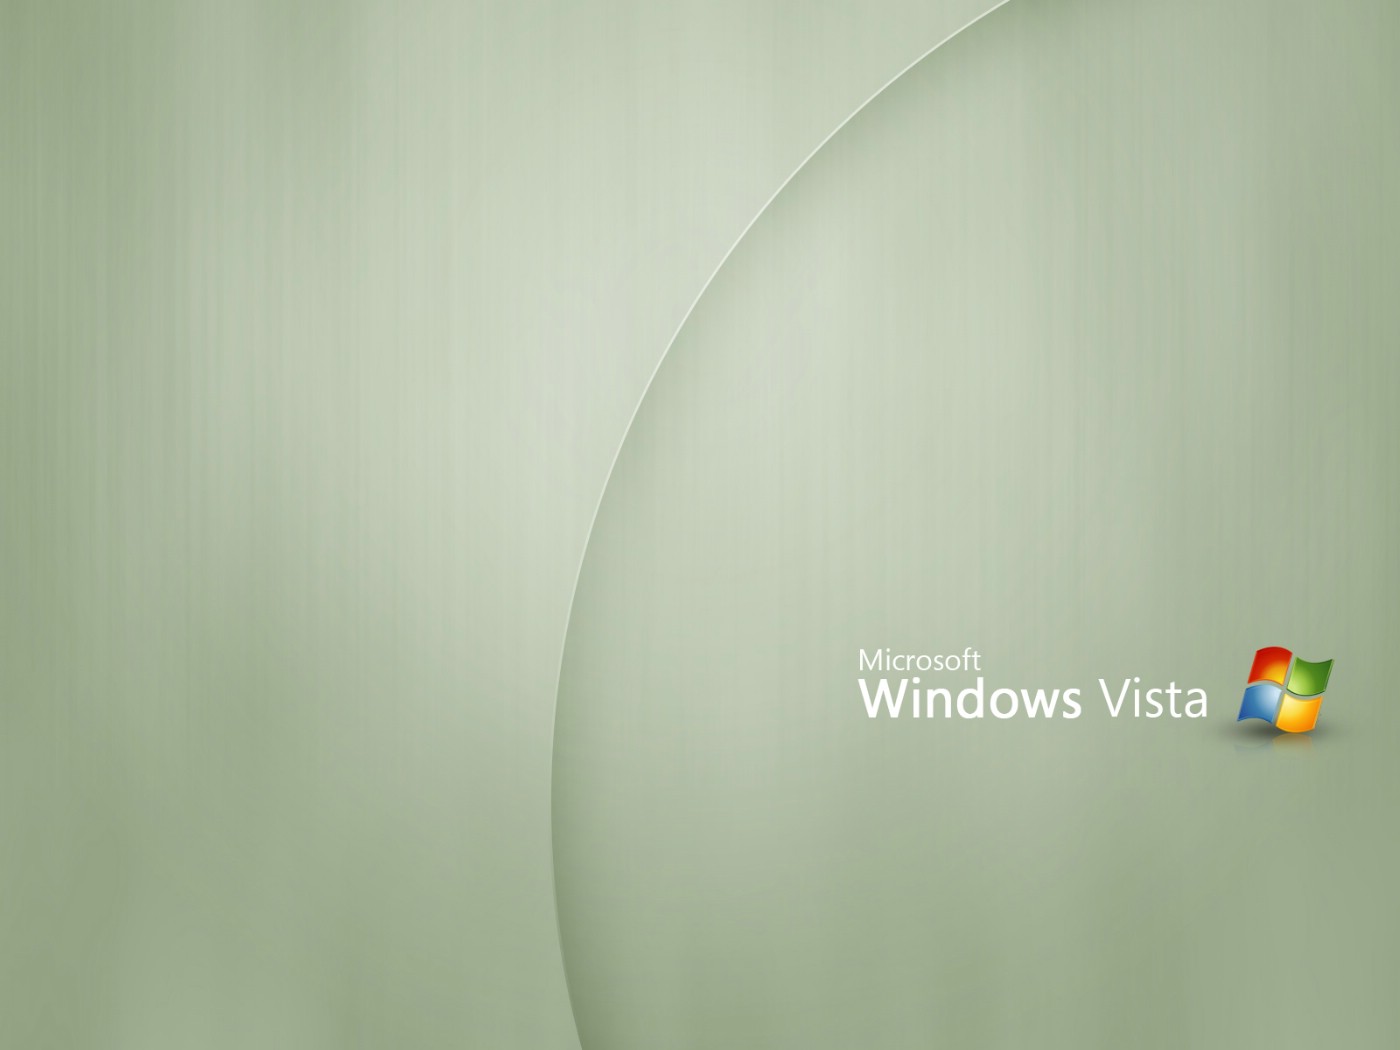 壁纸1400x1050Windows Vista壁纸 壁纸20壁纸 Windows Vista壁纸壁纸 Windows Vista壁纸图片 Windows Vista壁纸素材 系统壁纸 系统图库 系统图片素材桌面壁纸